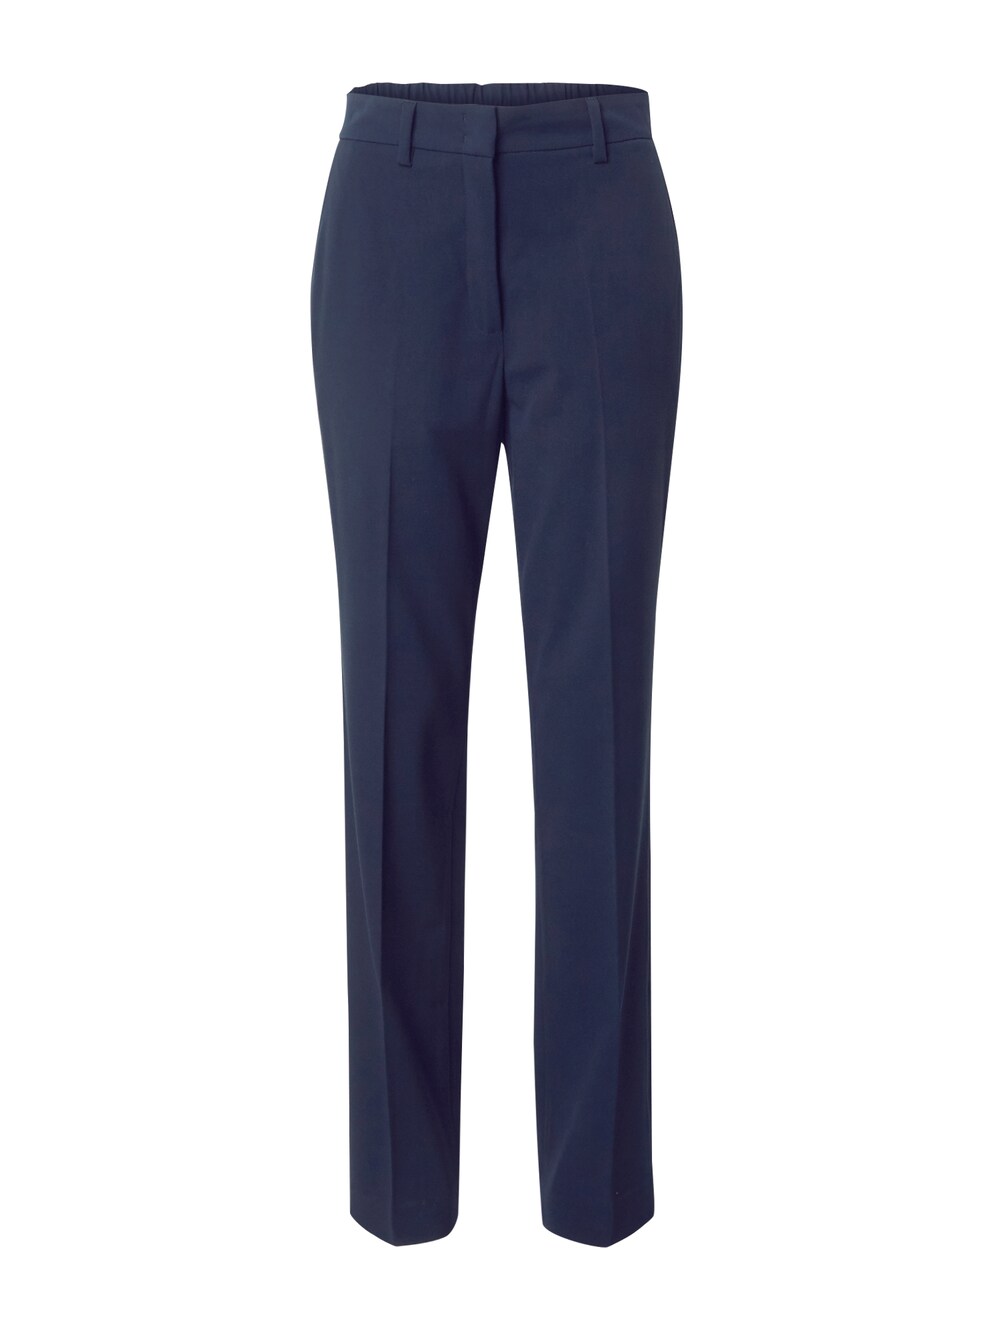 Обычные плиссированные брюки Esprit, темно-синий